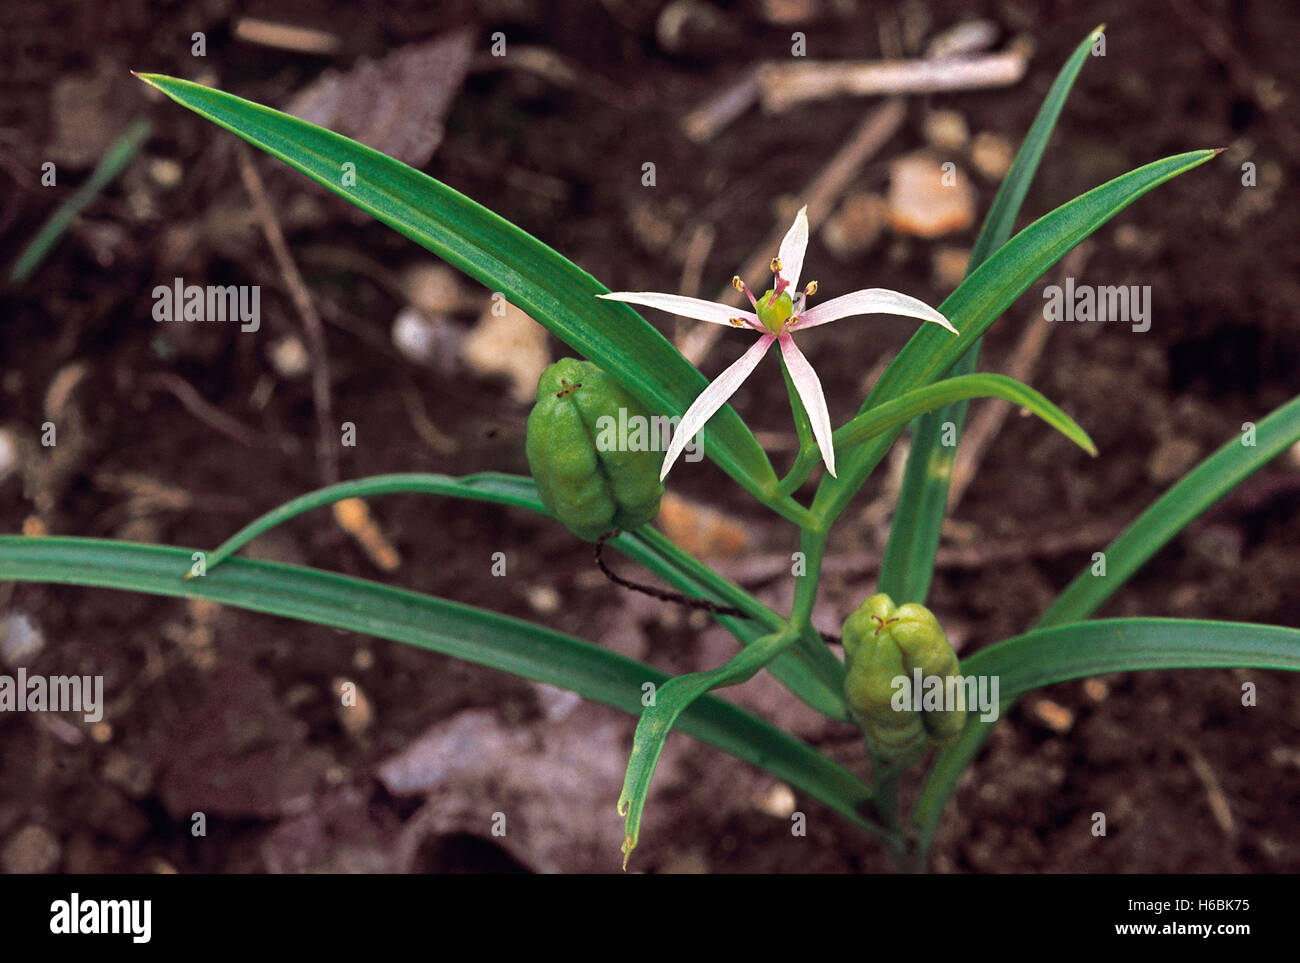 Ifigenia sp familia: liliaceae. una pequeña hierba que crece y se asemeja a los pastos anuales Foto de stock